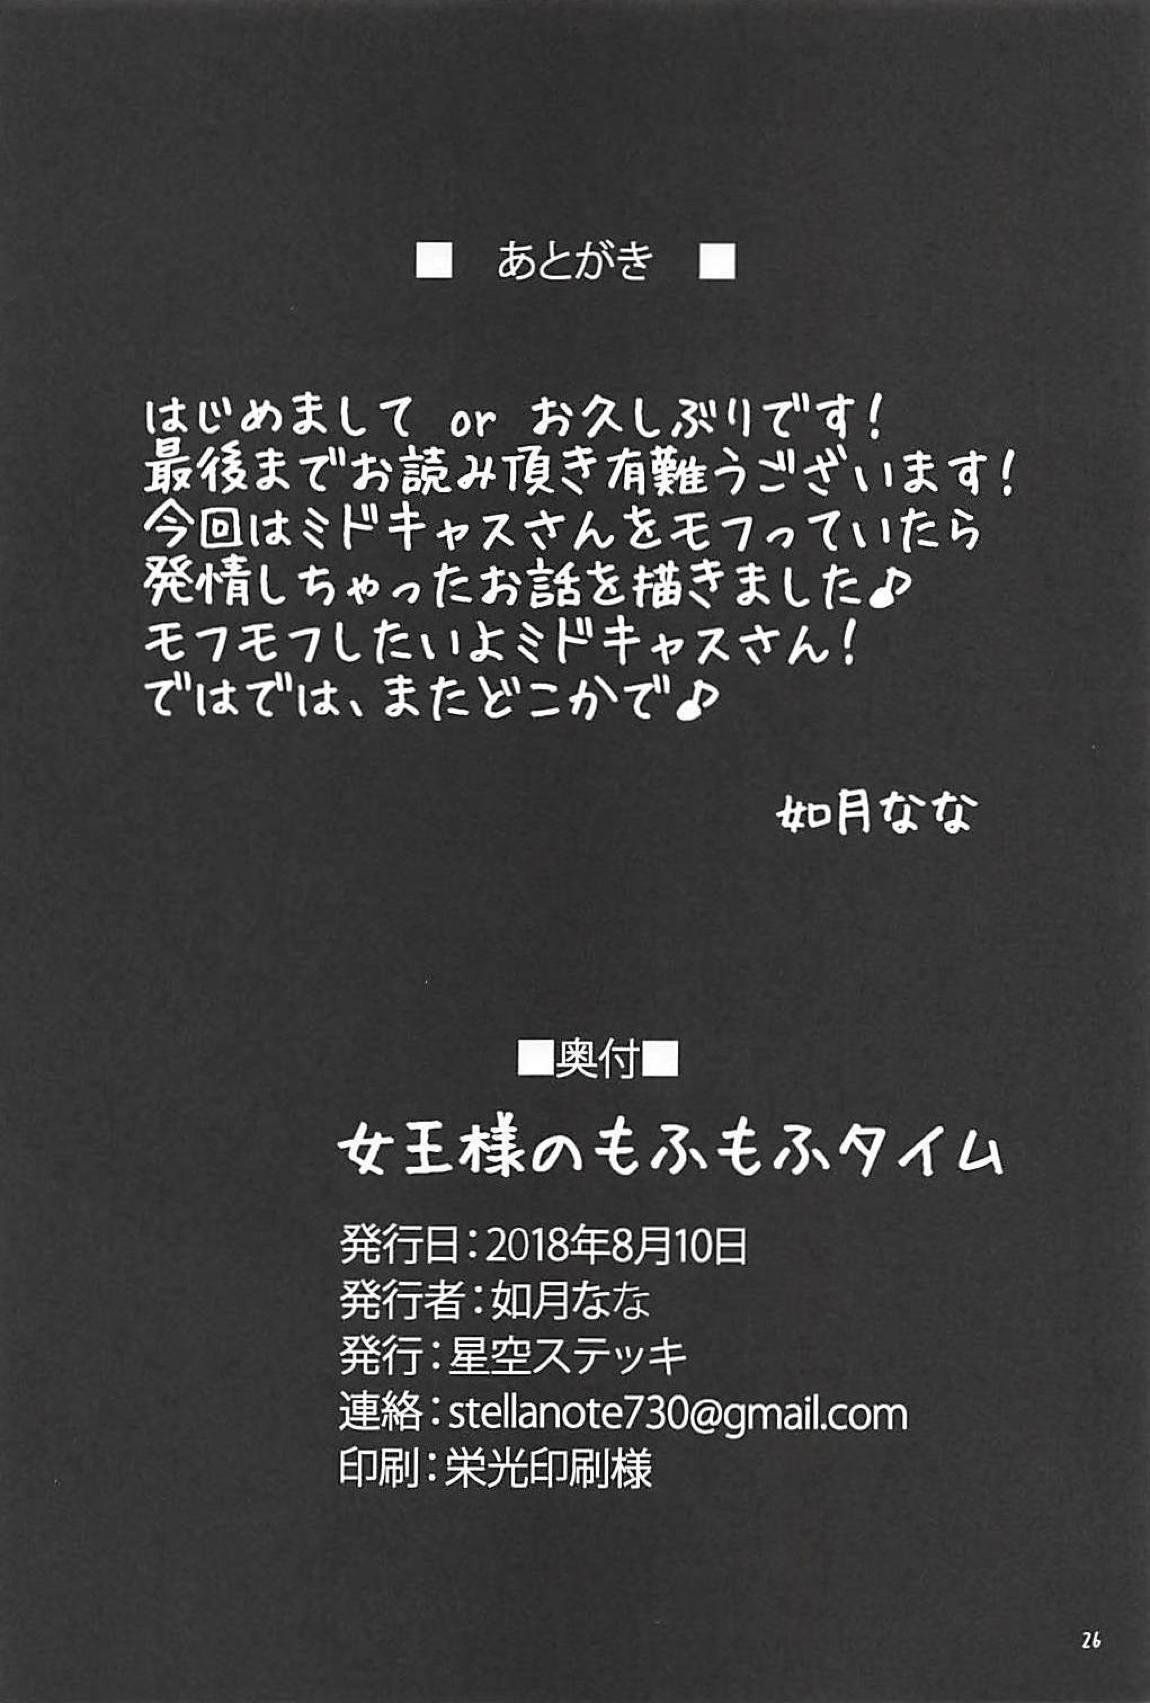 Condom Joou-sama no Mofumofu Time - Fate grand order Cogida - Page 25